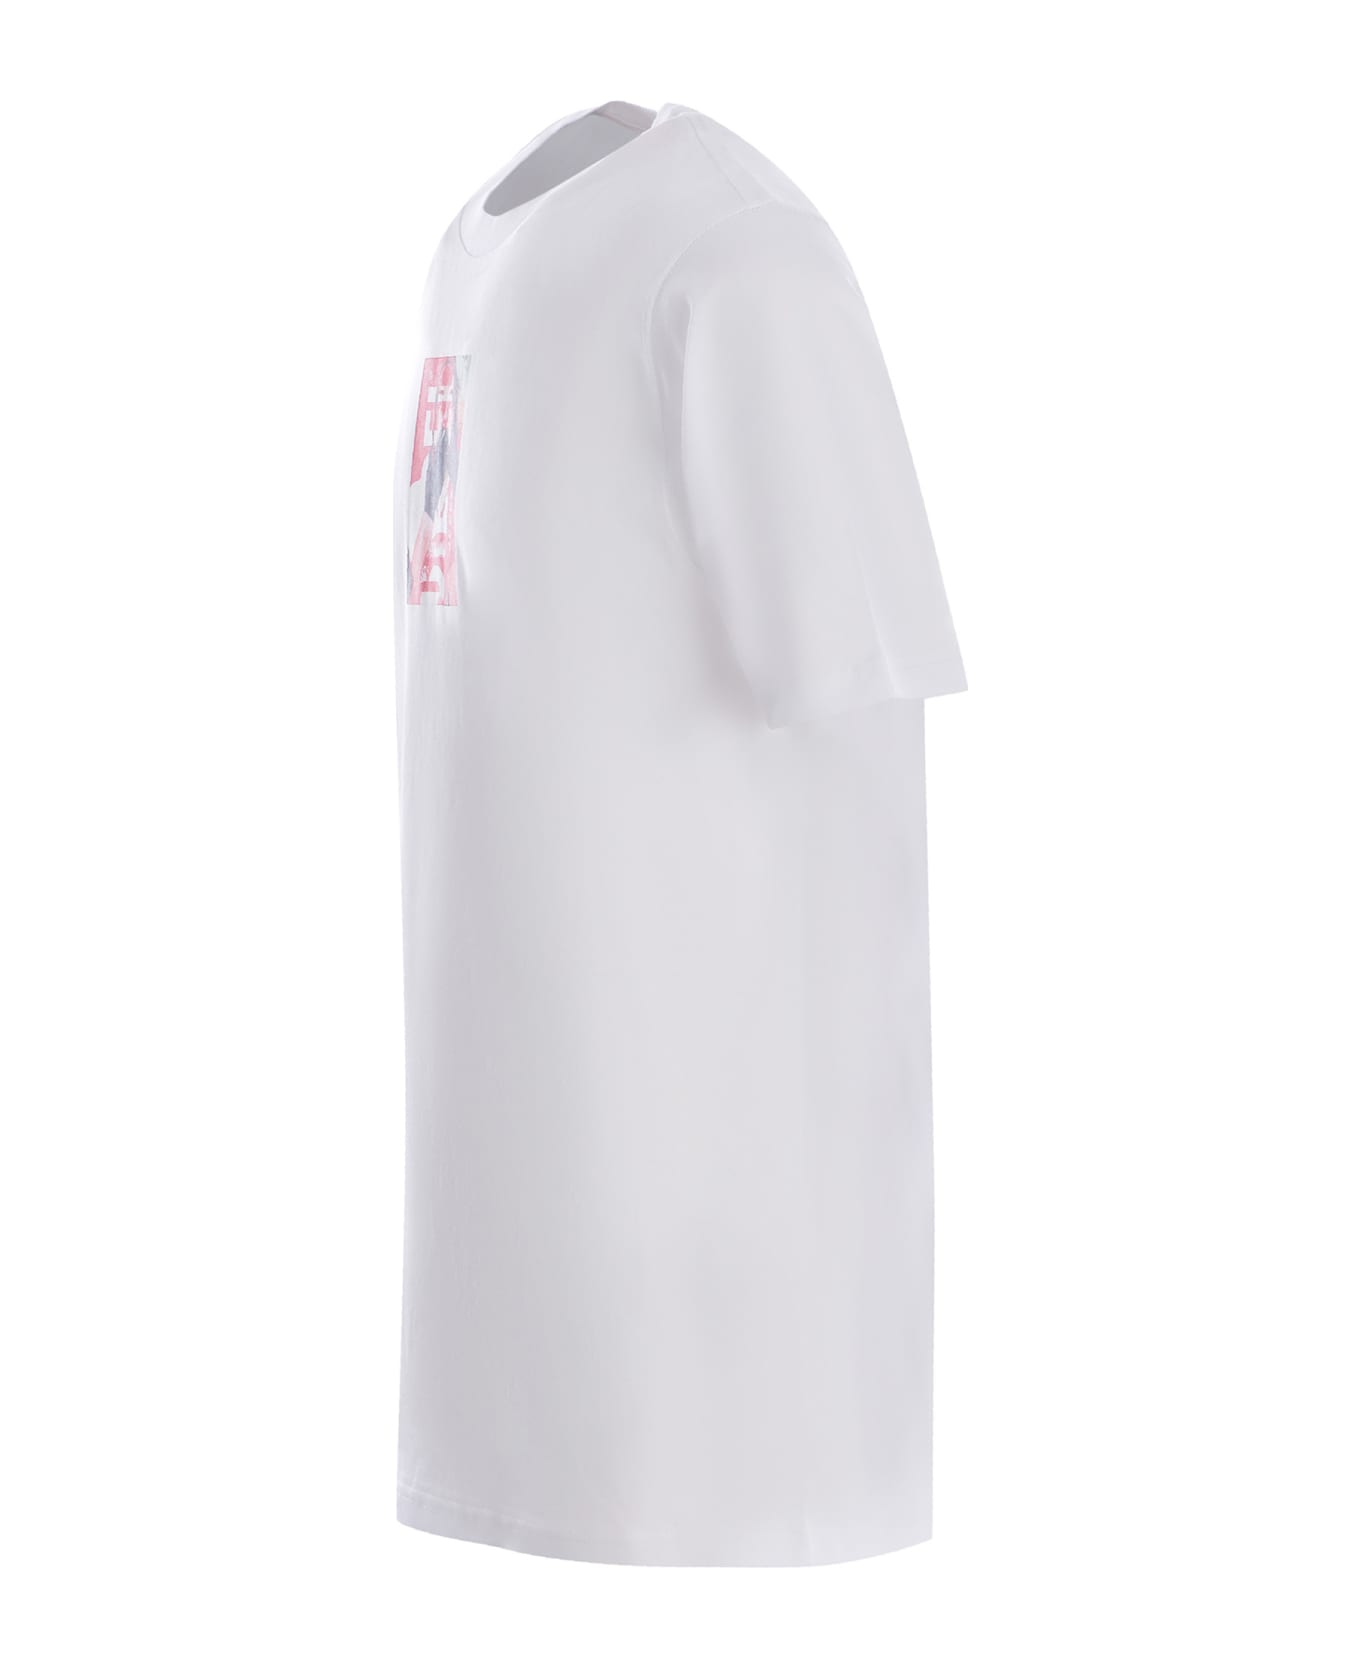 Diesel T-just N11 T-shirt - White ニットウェア